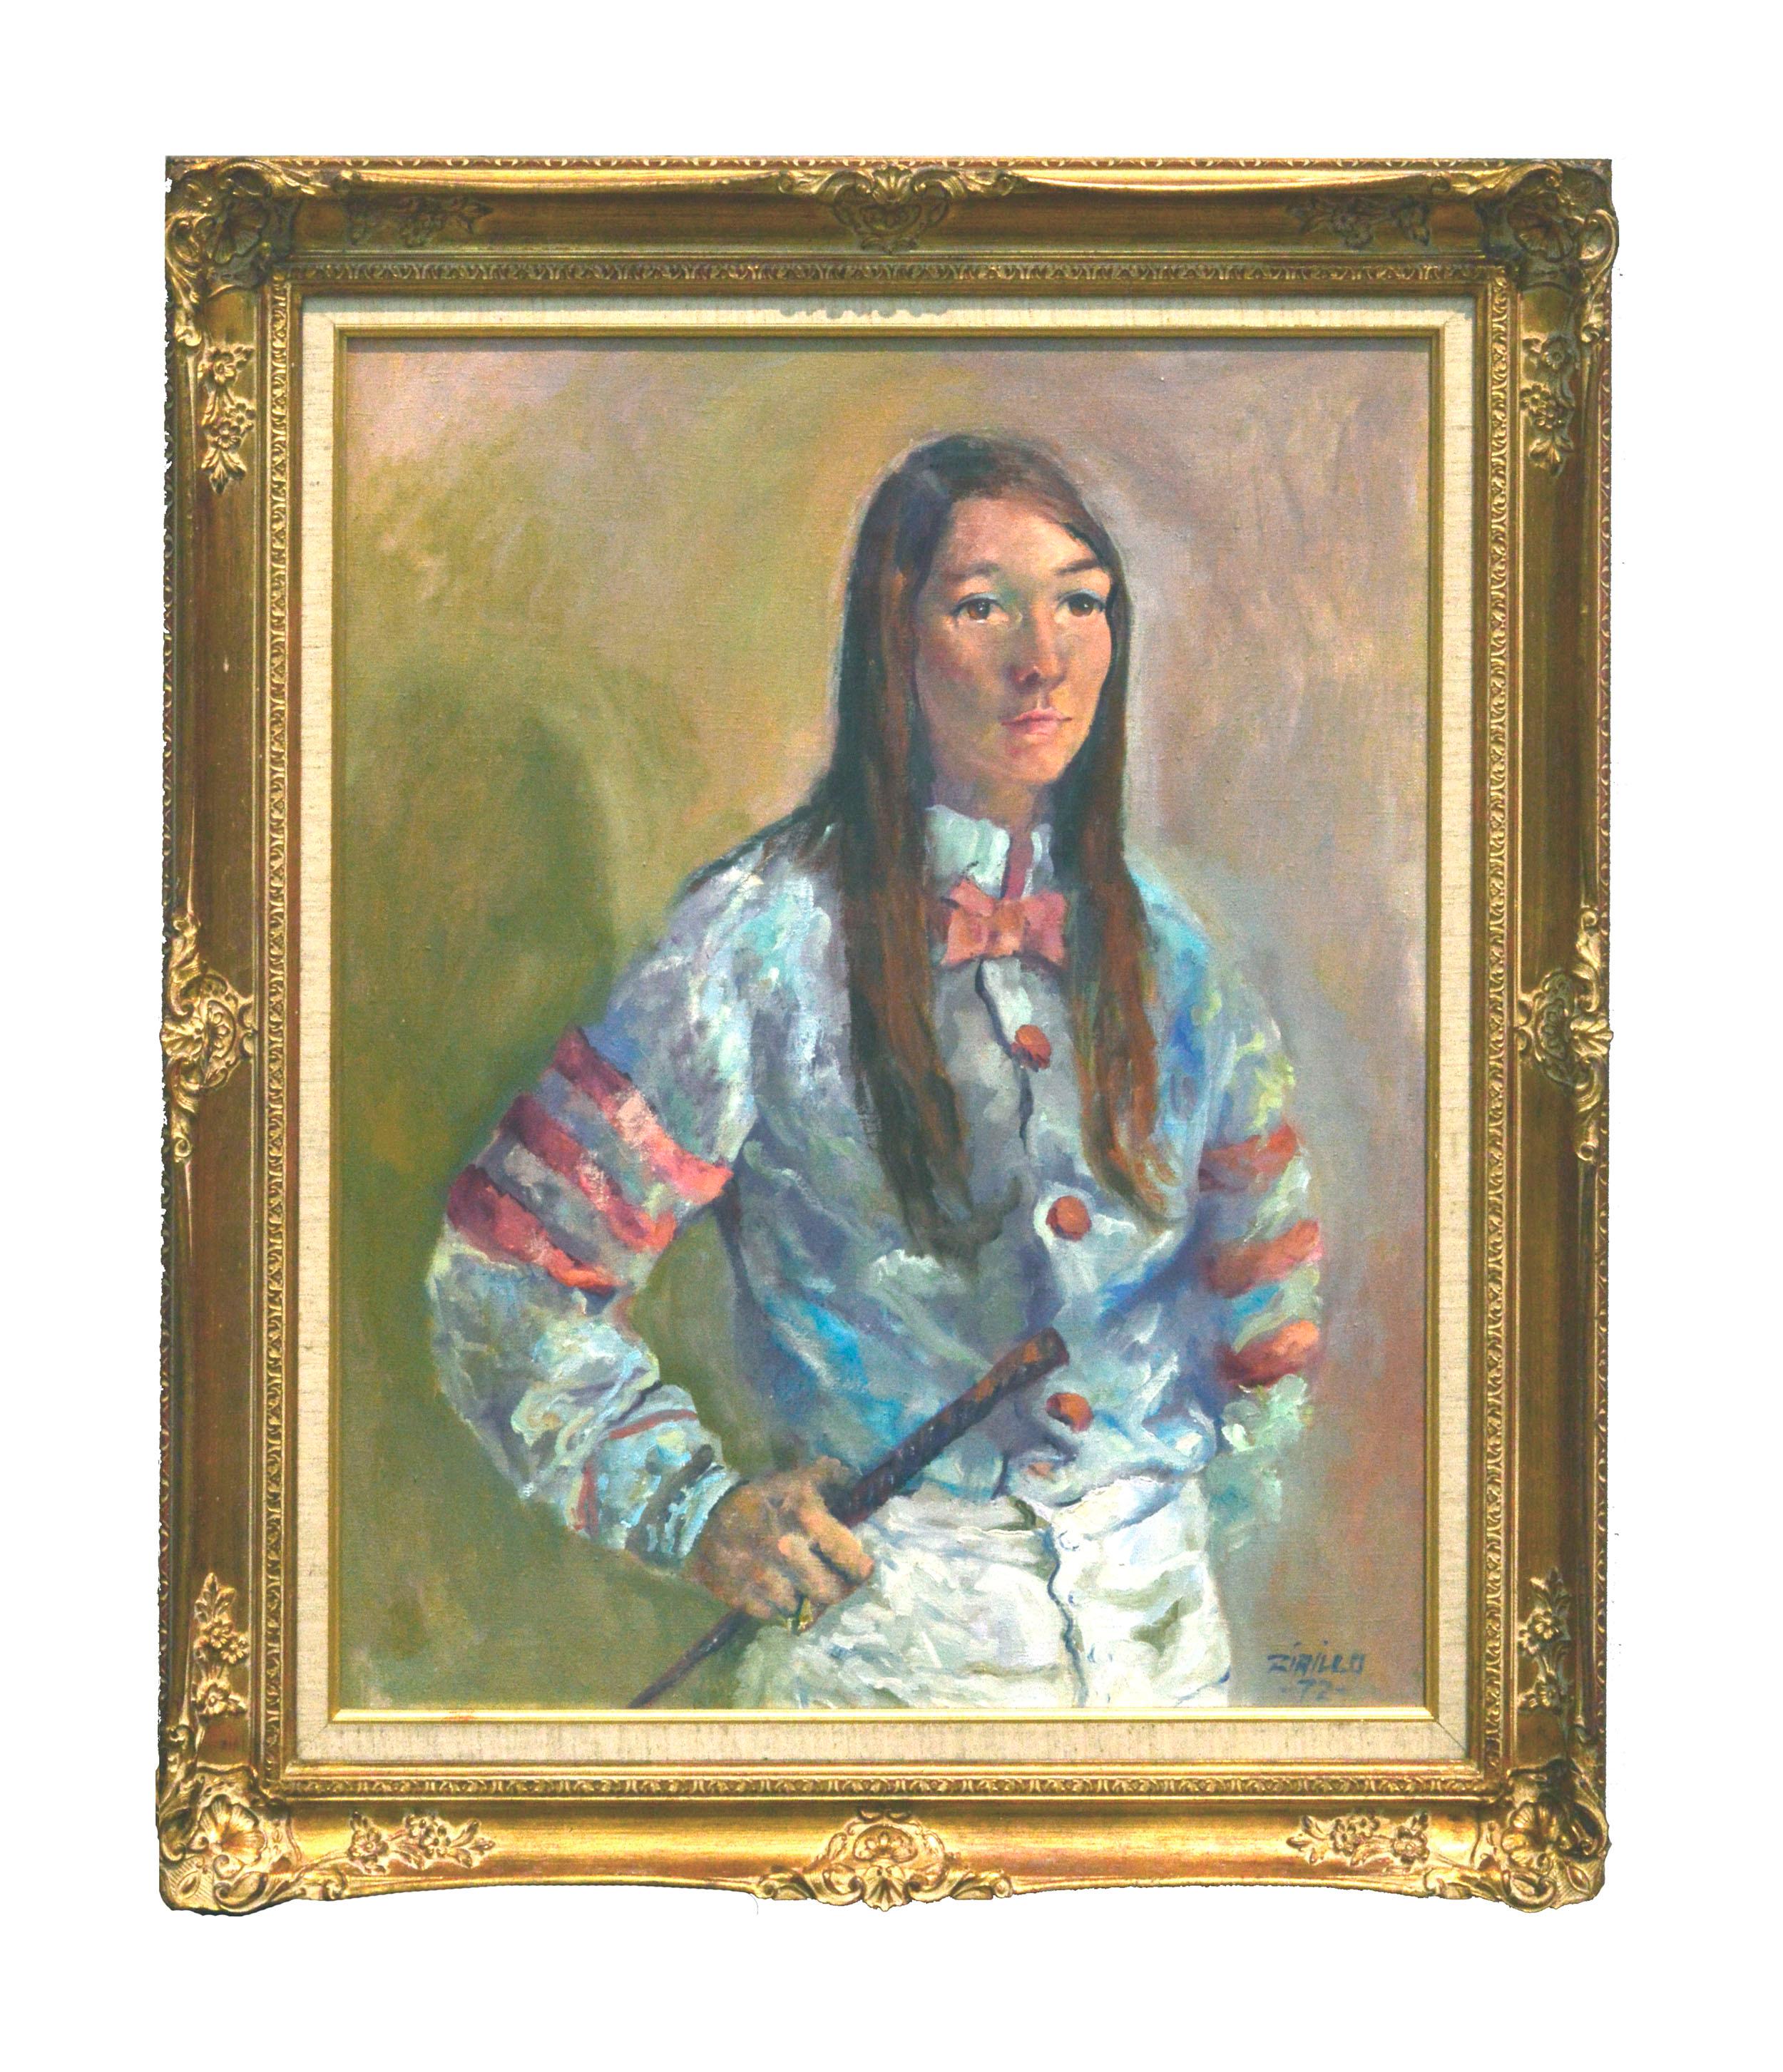 Porträt von Robyn Smith (Astair) – weibliche Jockey aus den 1970er Jahren